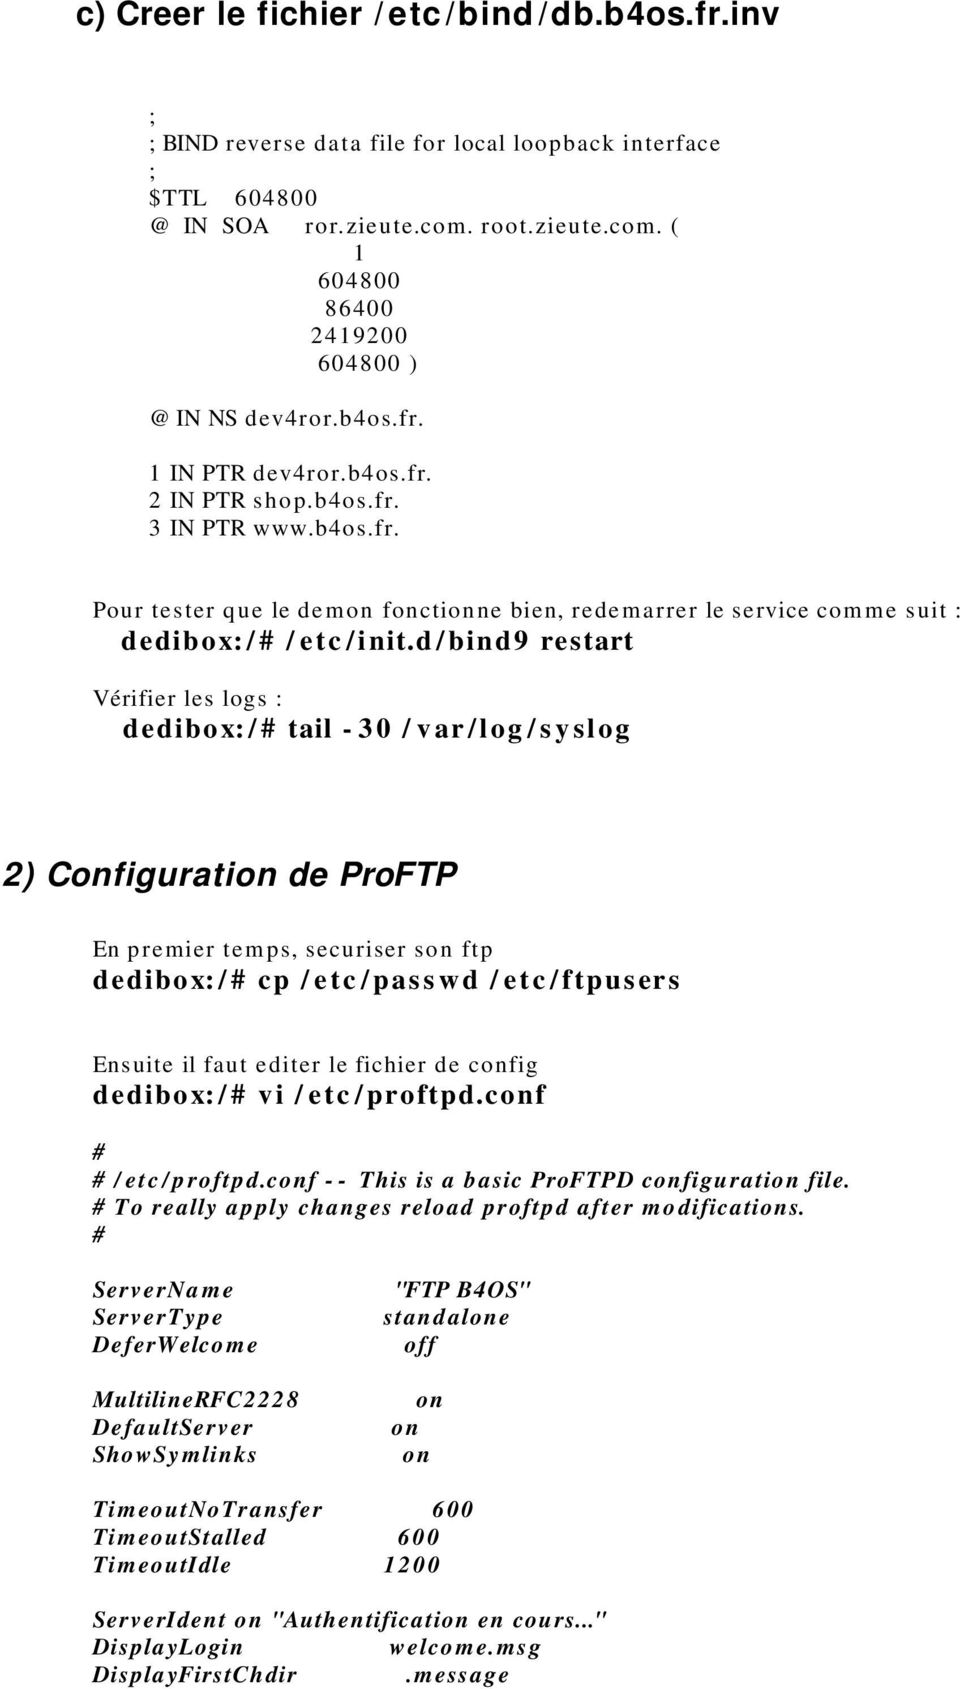 d / bind9 restart Vérifier les logs : dedibox: / # tail - 30 / v ar /log / s y slog 2) Configuration de ProFTP En premier tem ps, securiser son ftp dedibox: / # cp / e tc / pass wd / etc / ftpusers